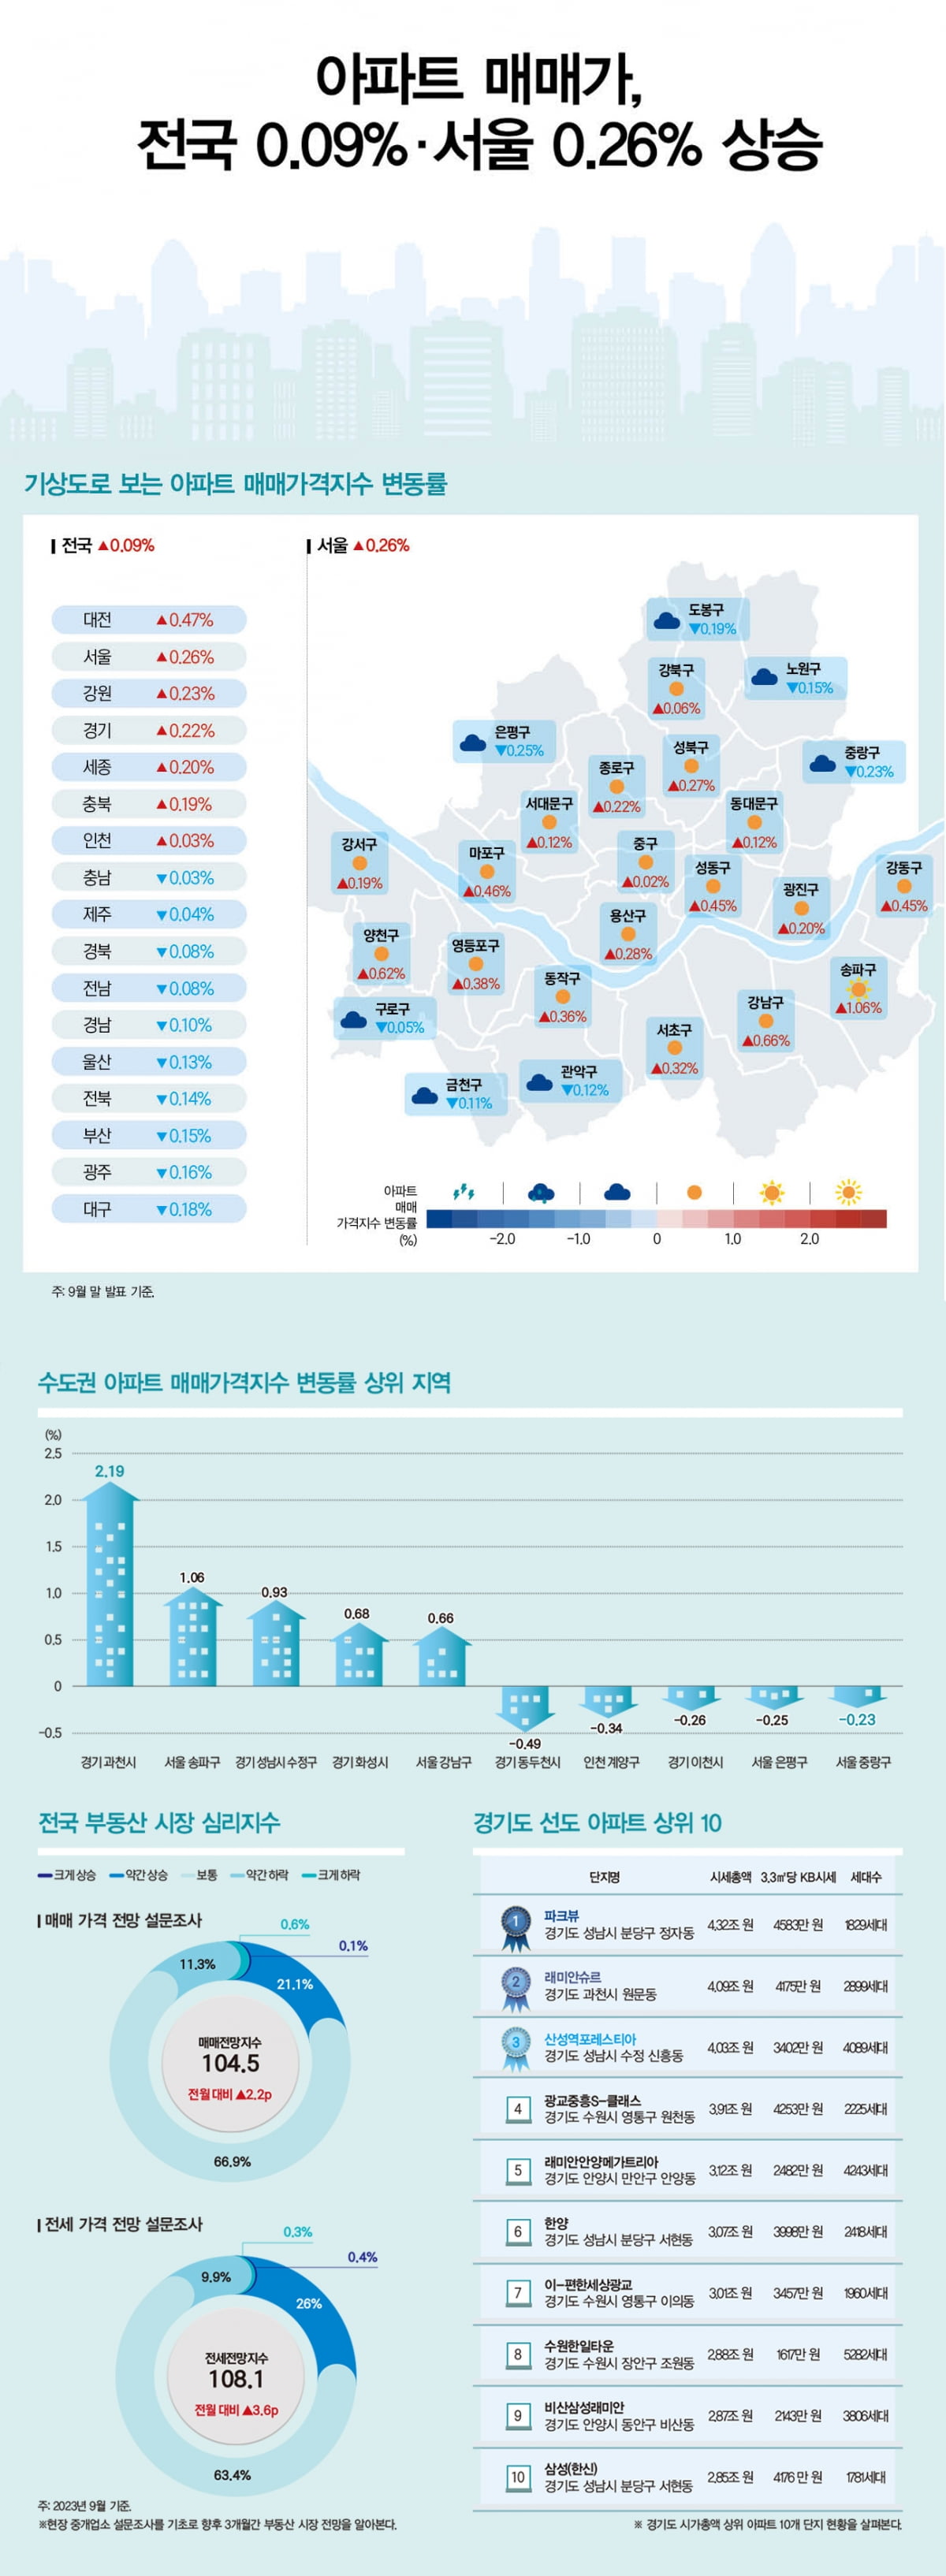 아파트 매매가, 전국 0.09%·서울 0.26% 상승